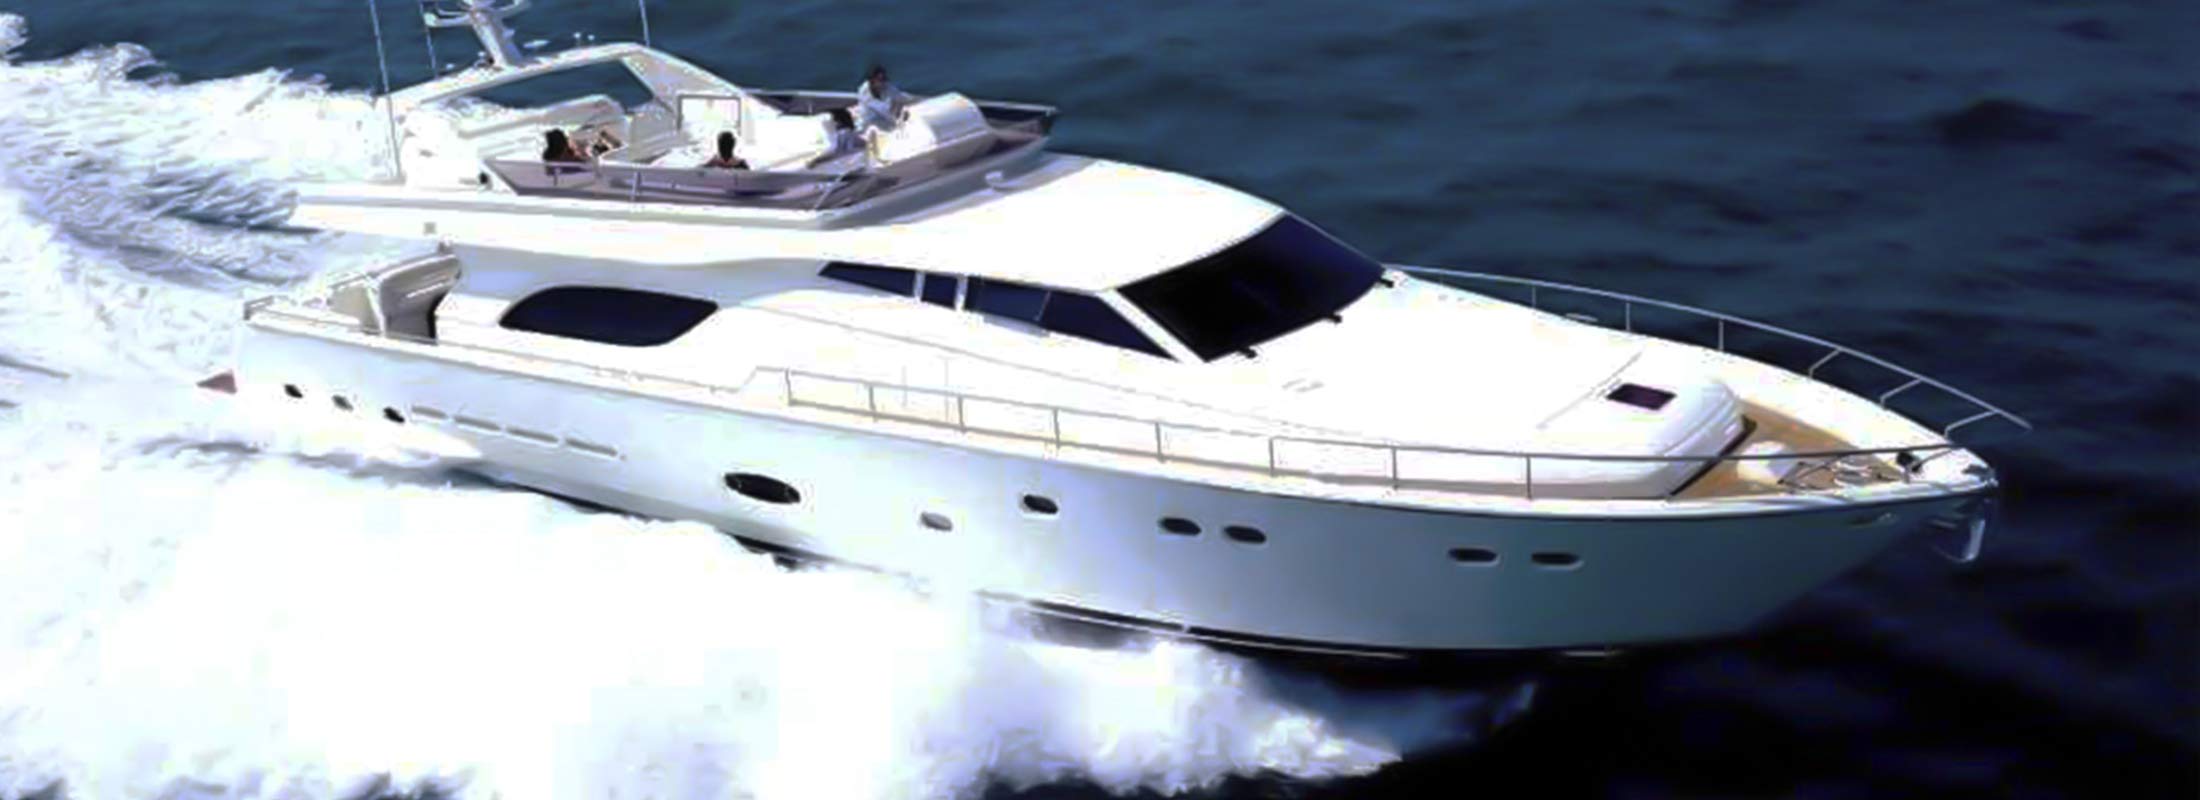 Amor Motor Yacht for Charter Mediterranean slider 2